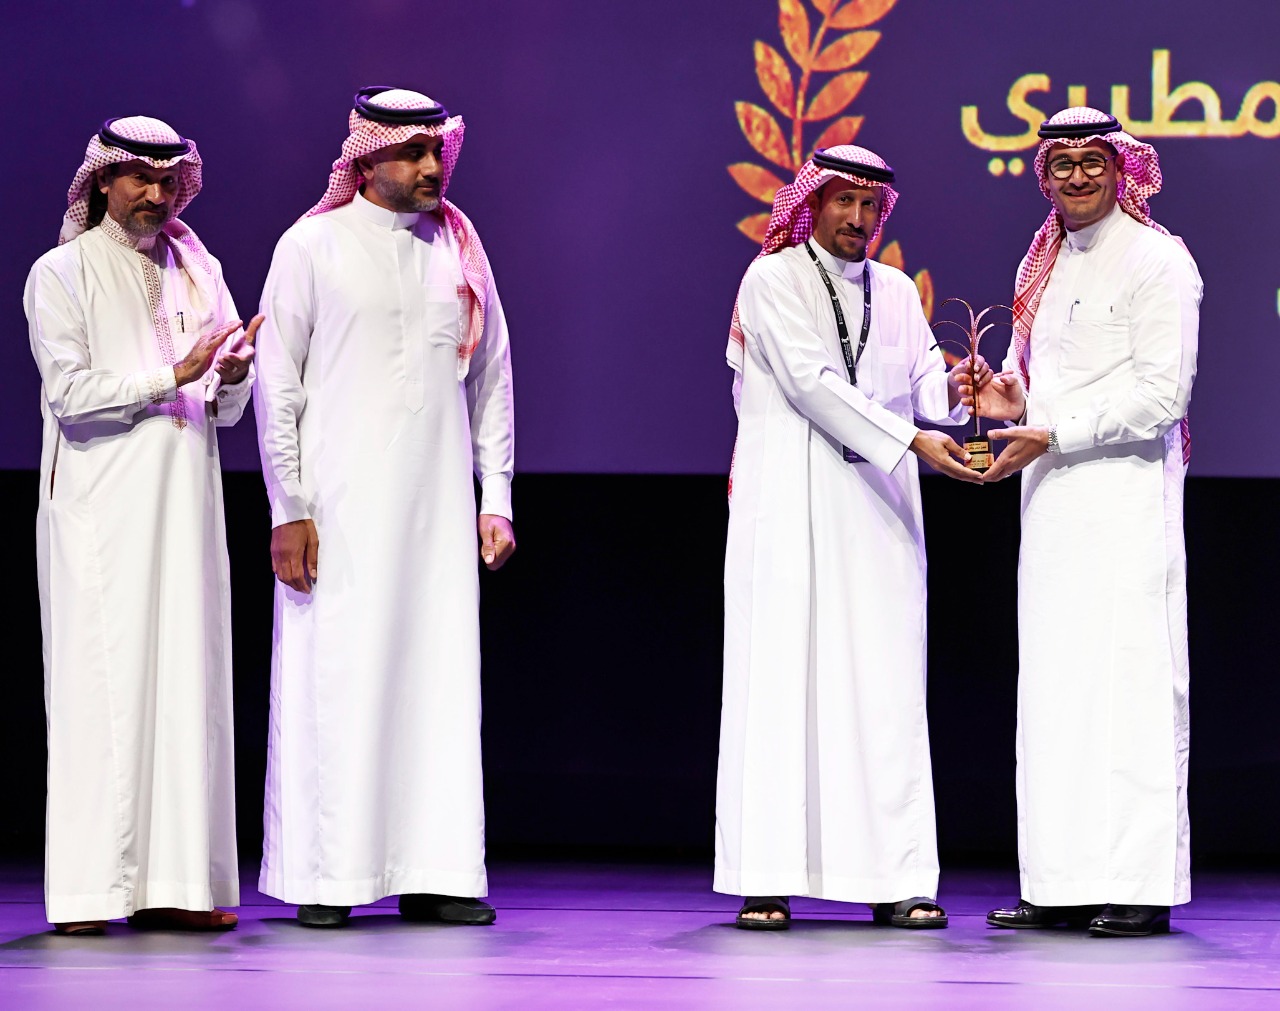 يختتم مهرجان الفيلم السعودي بجوائز السجادة الحمراء والنخلة الذهبية